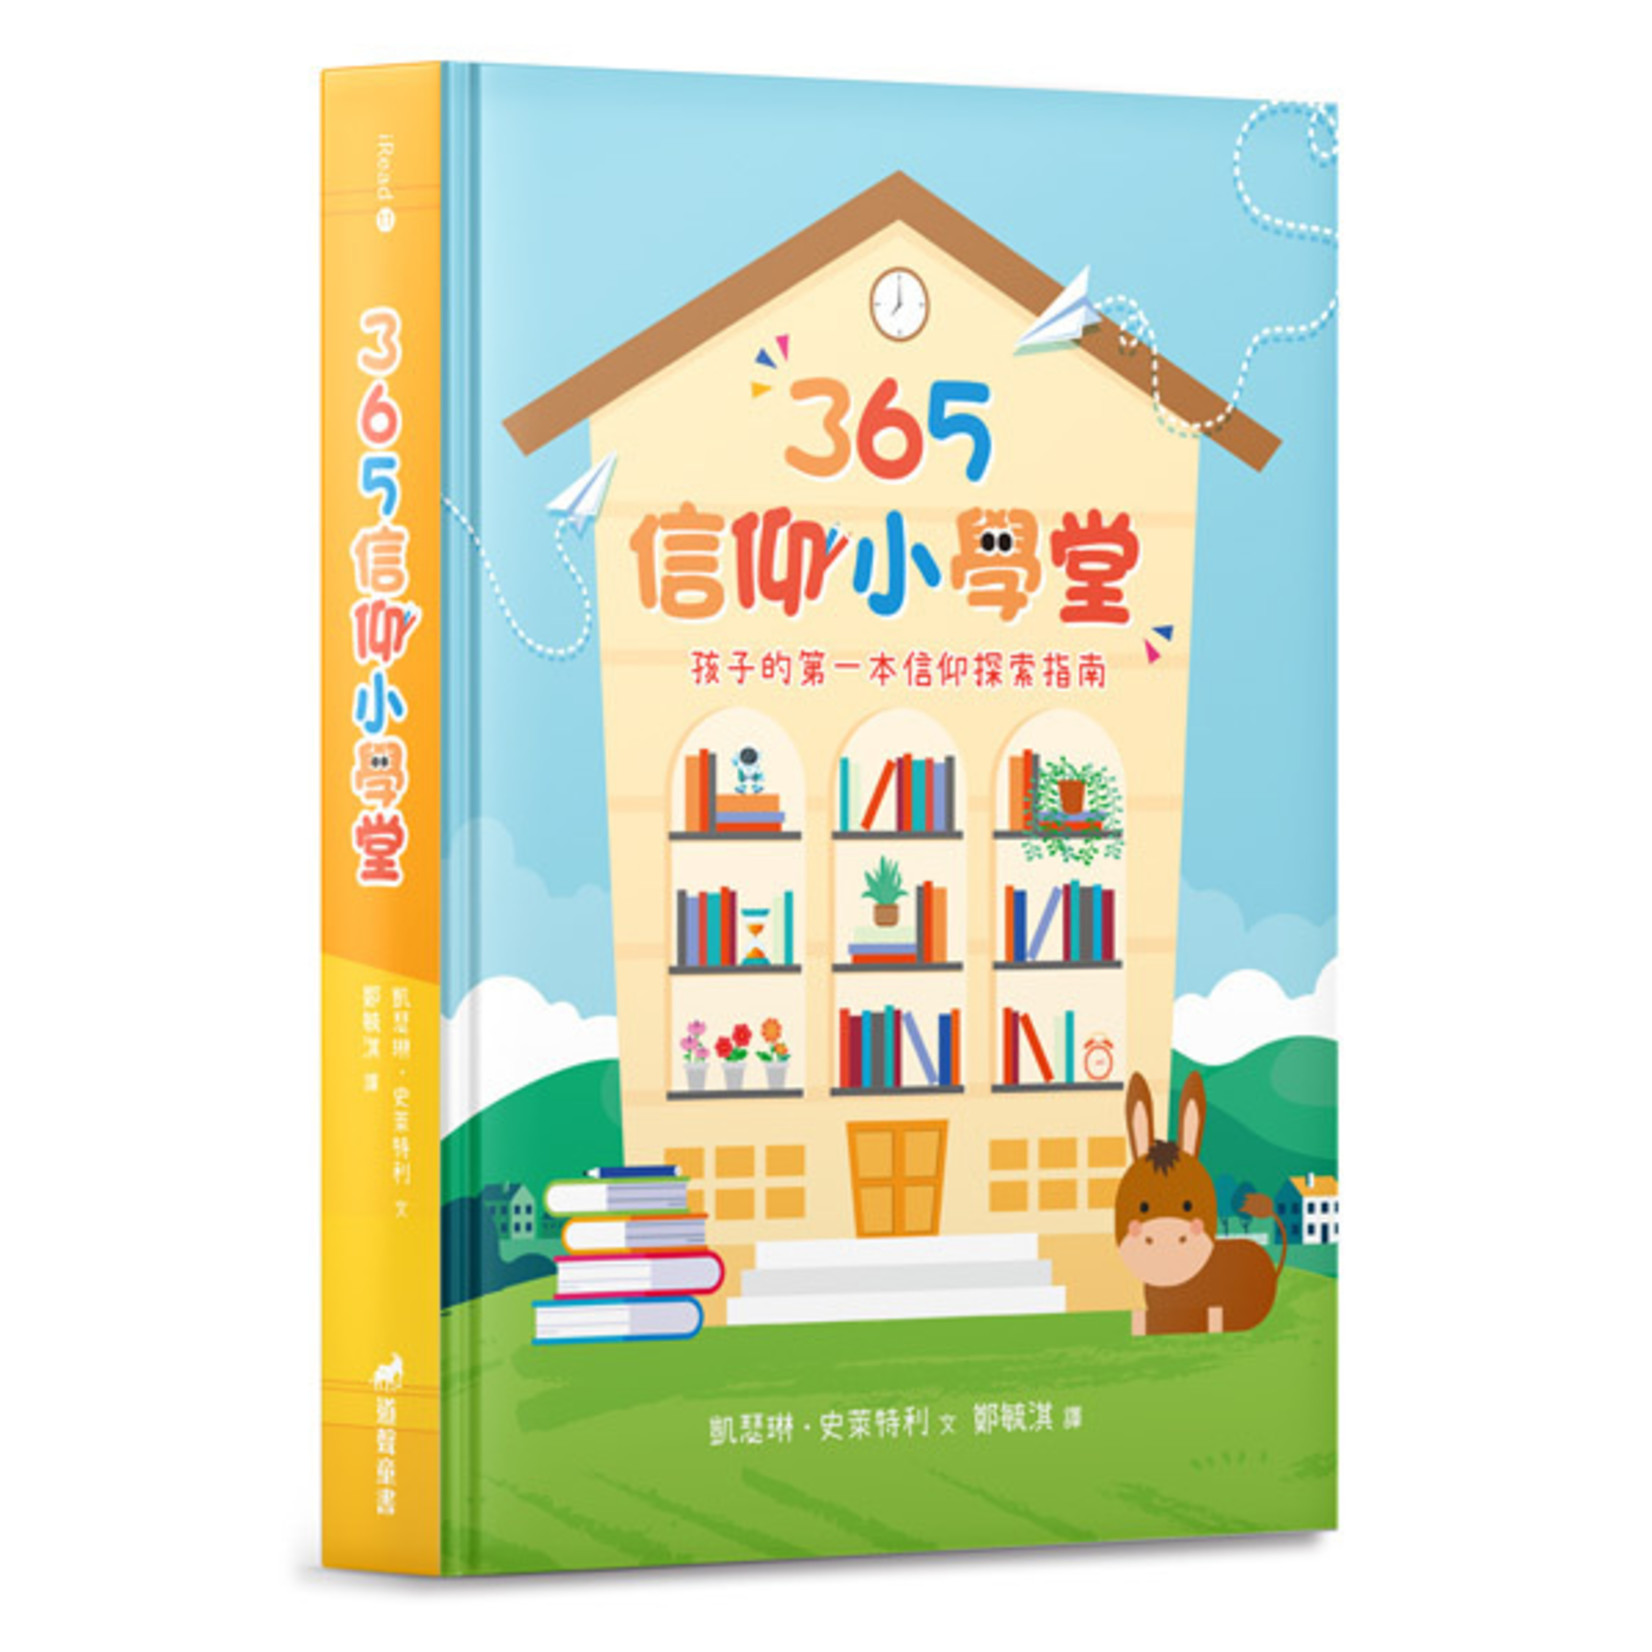 道聲 Taosheng Taiwan 365信仰小學堂 365 Bible Answers for Curious Kids